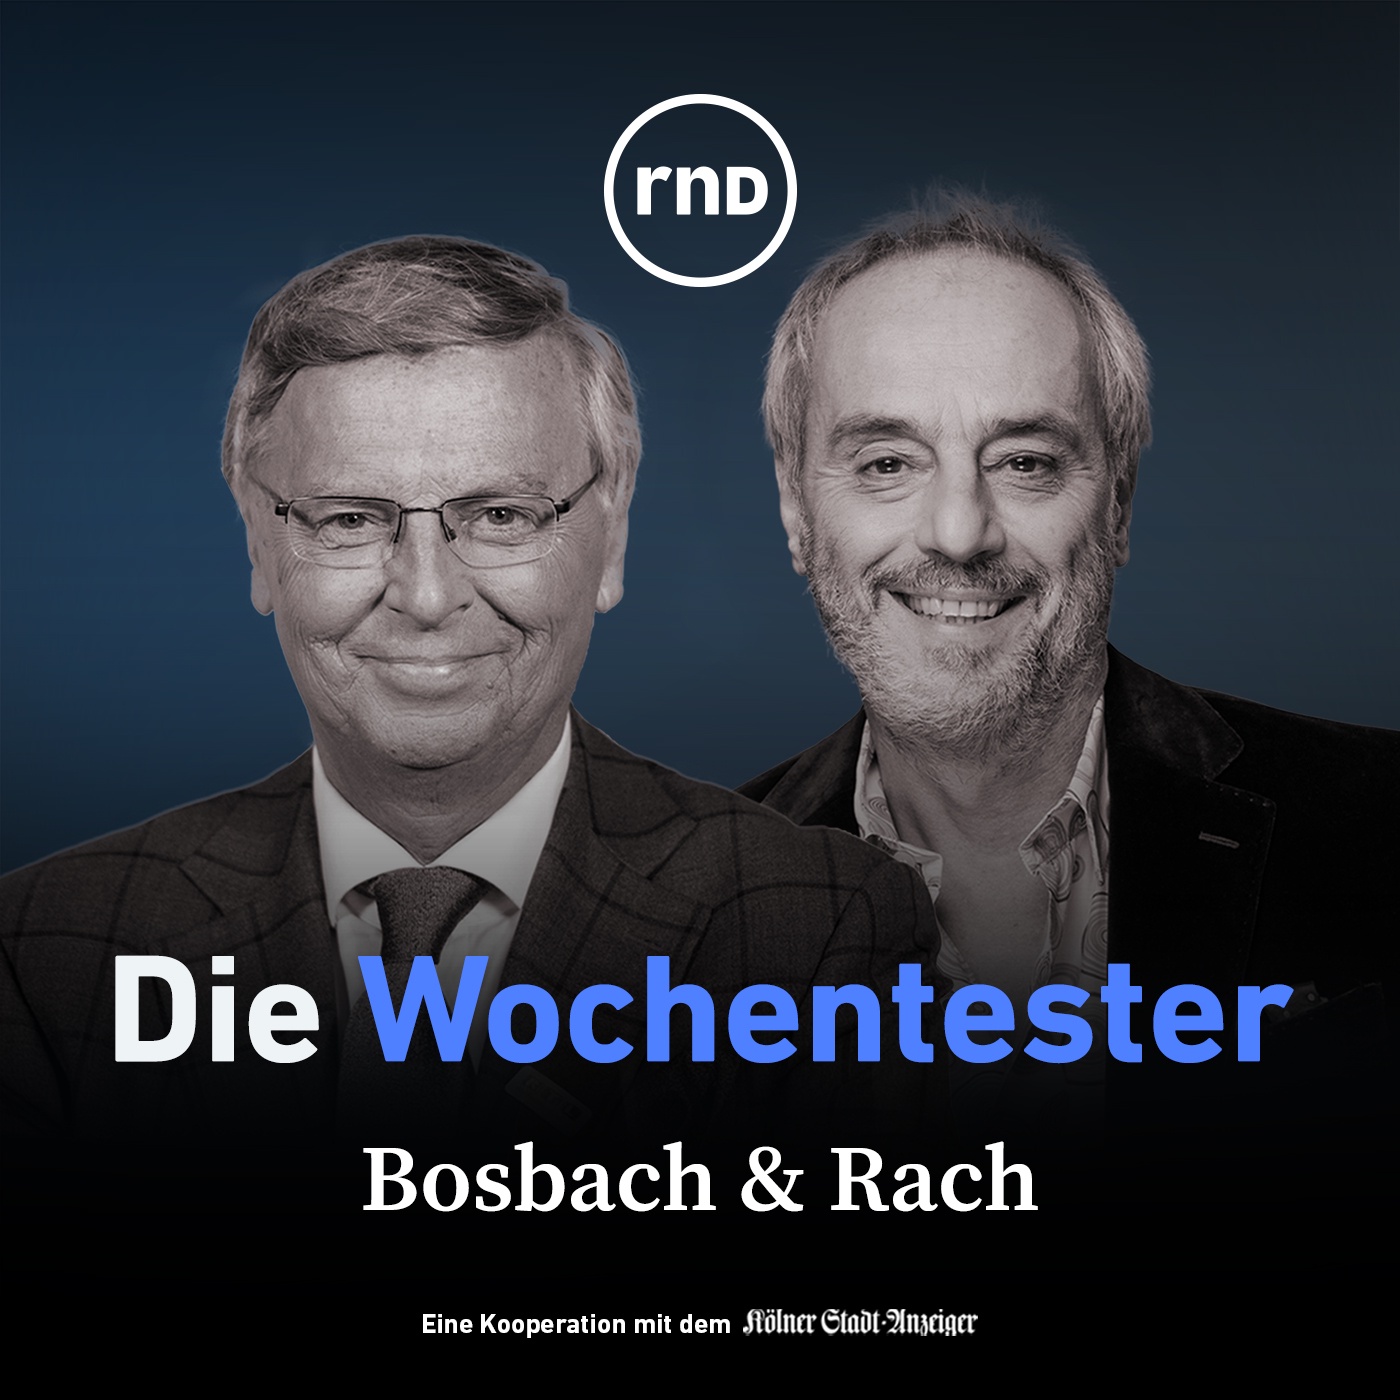 Bosbach & Rach - mit Julia Klöckner